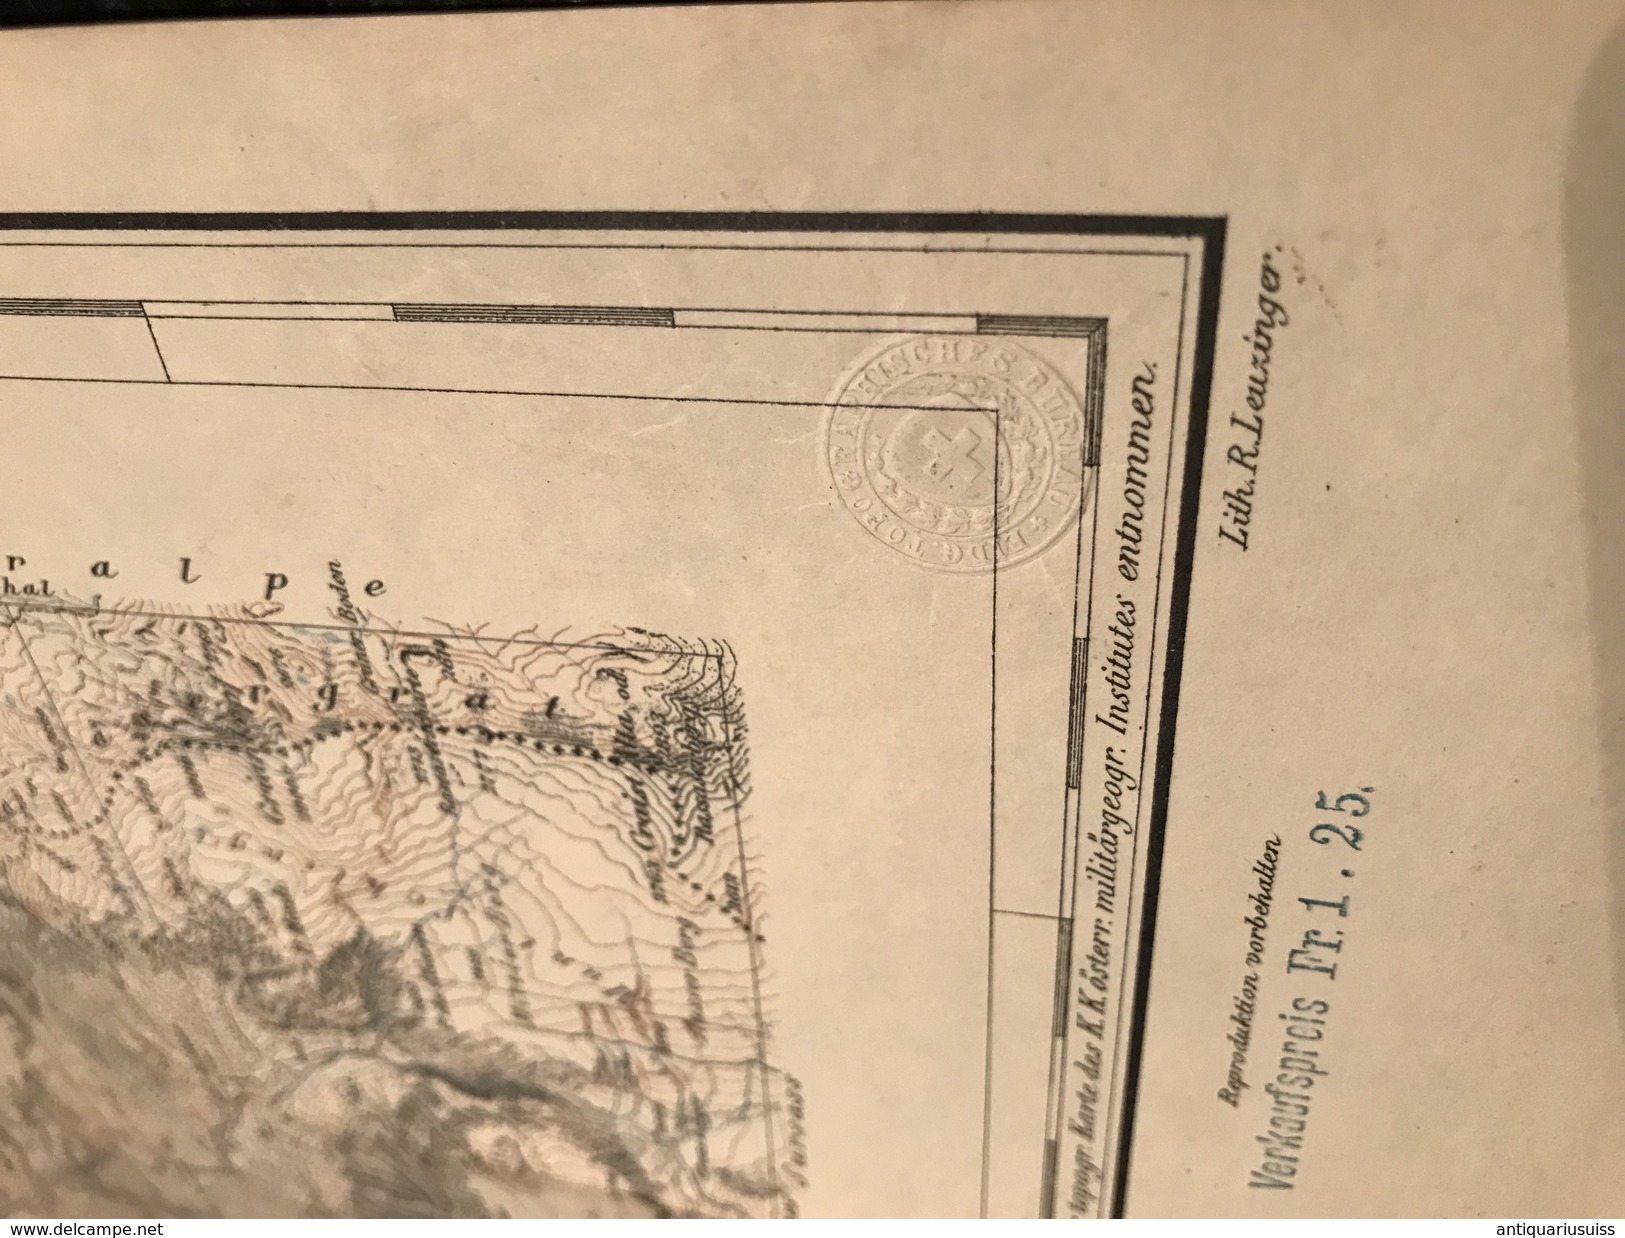 Tarasp - TOPOGRAPHISCHE Atlas DER SCHWEIZ - 1898-CARTE TOPOGRAPHIQUE DE LA SUISSE - Siegfriedatlas - Blatt Nr. 421 - Topographische Karten